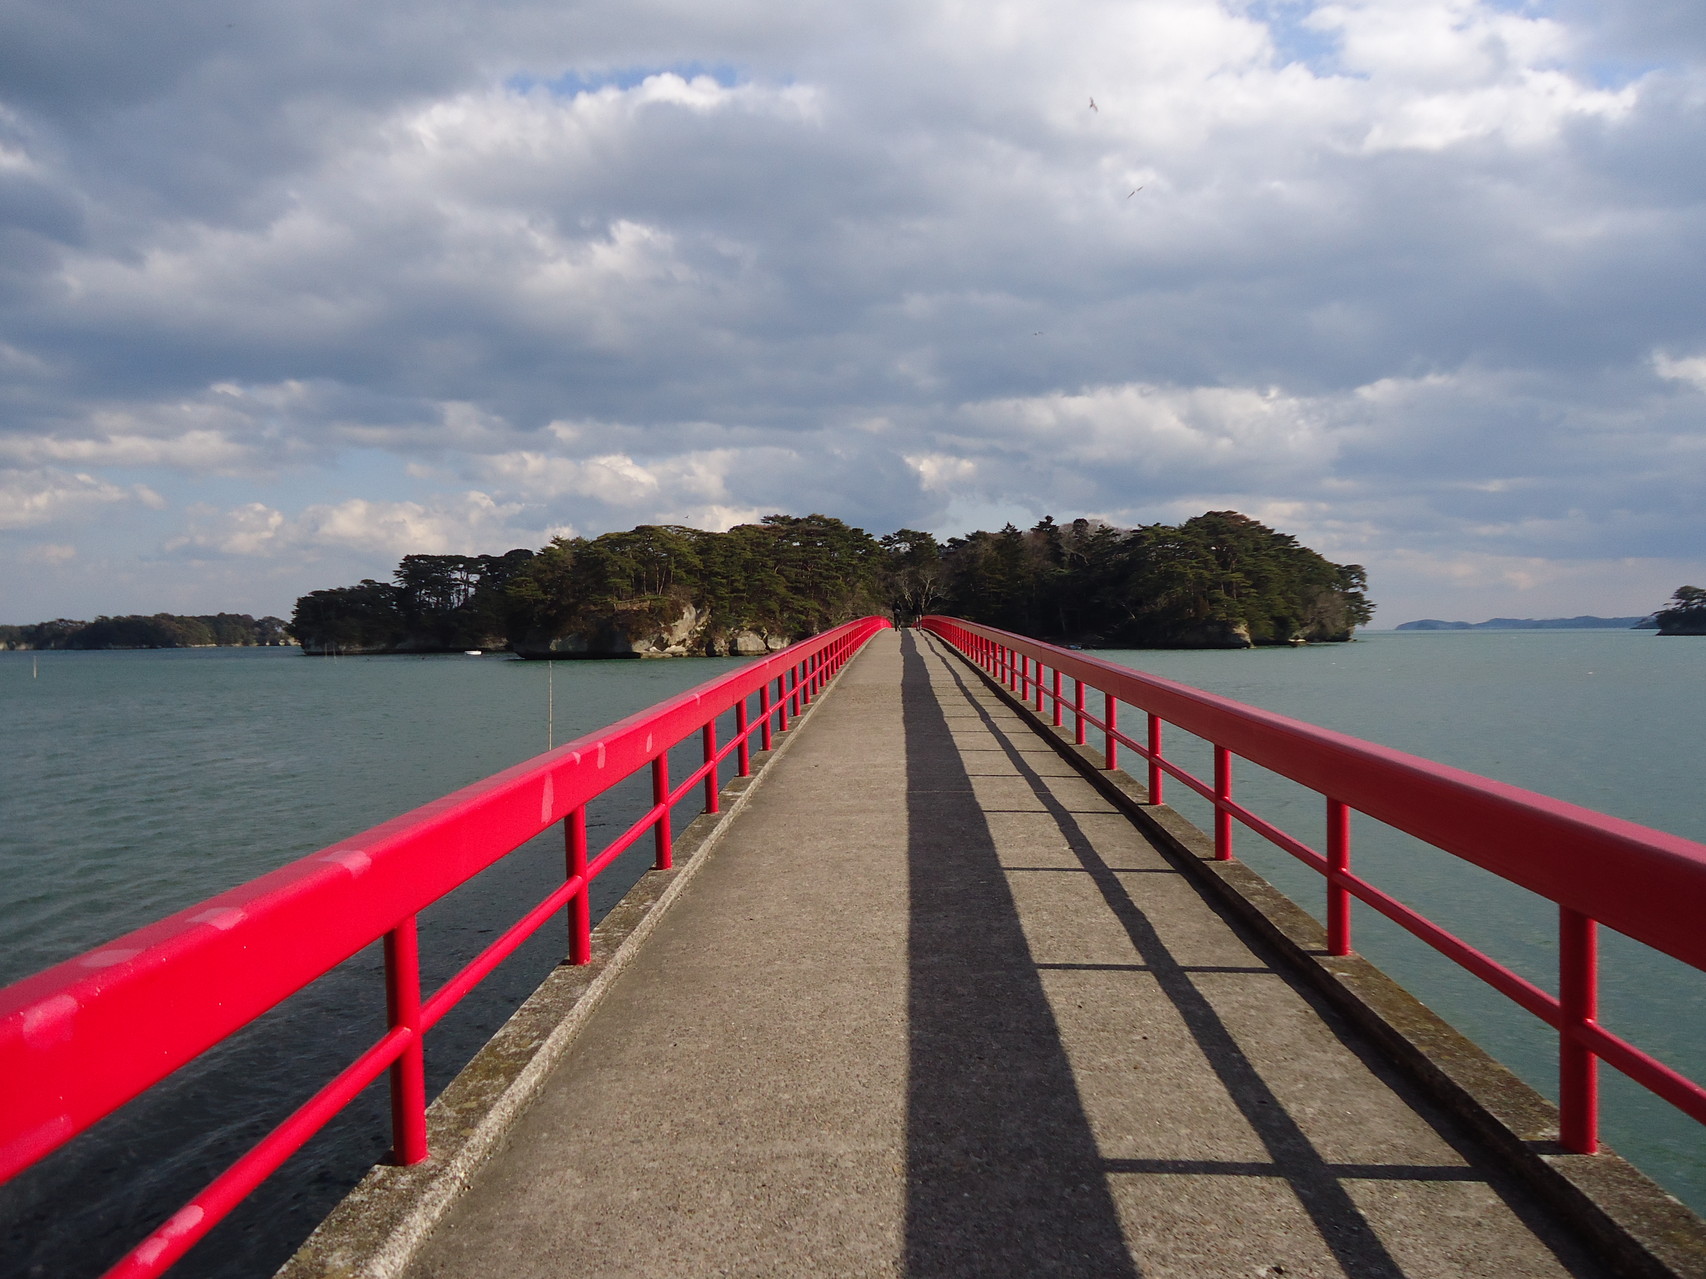 Berühmte Brücke in Matsushima: Es wird gesagt, dass frisch verliebte Paare diese Brücke nicht überqueren sollten, weil sie ihnen Unglück in der Beziehung bringen soll.